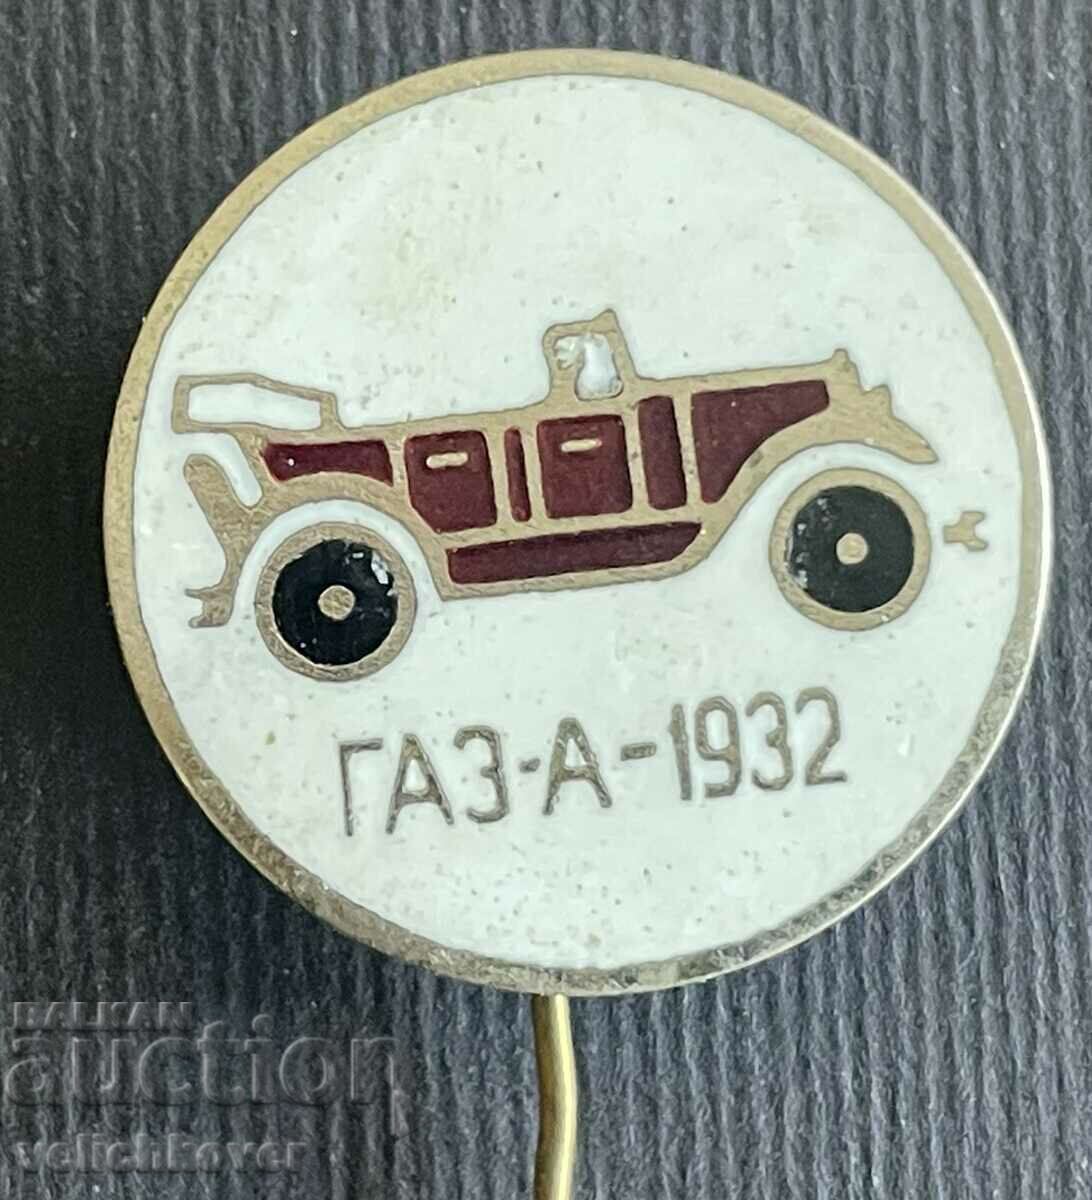 35759 USSR car mark GAZ-A 1932. Email